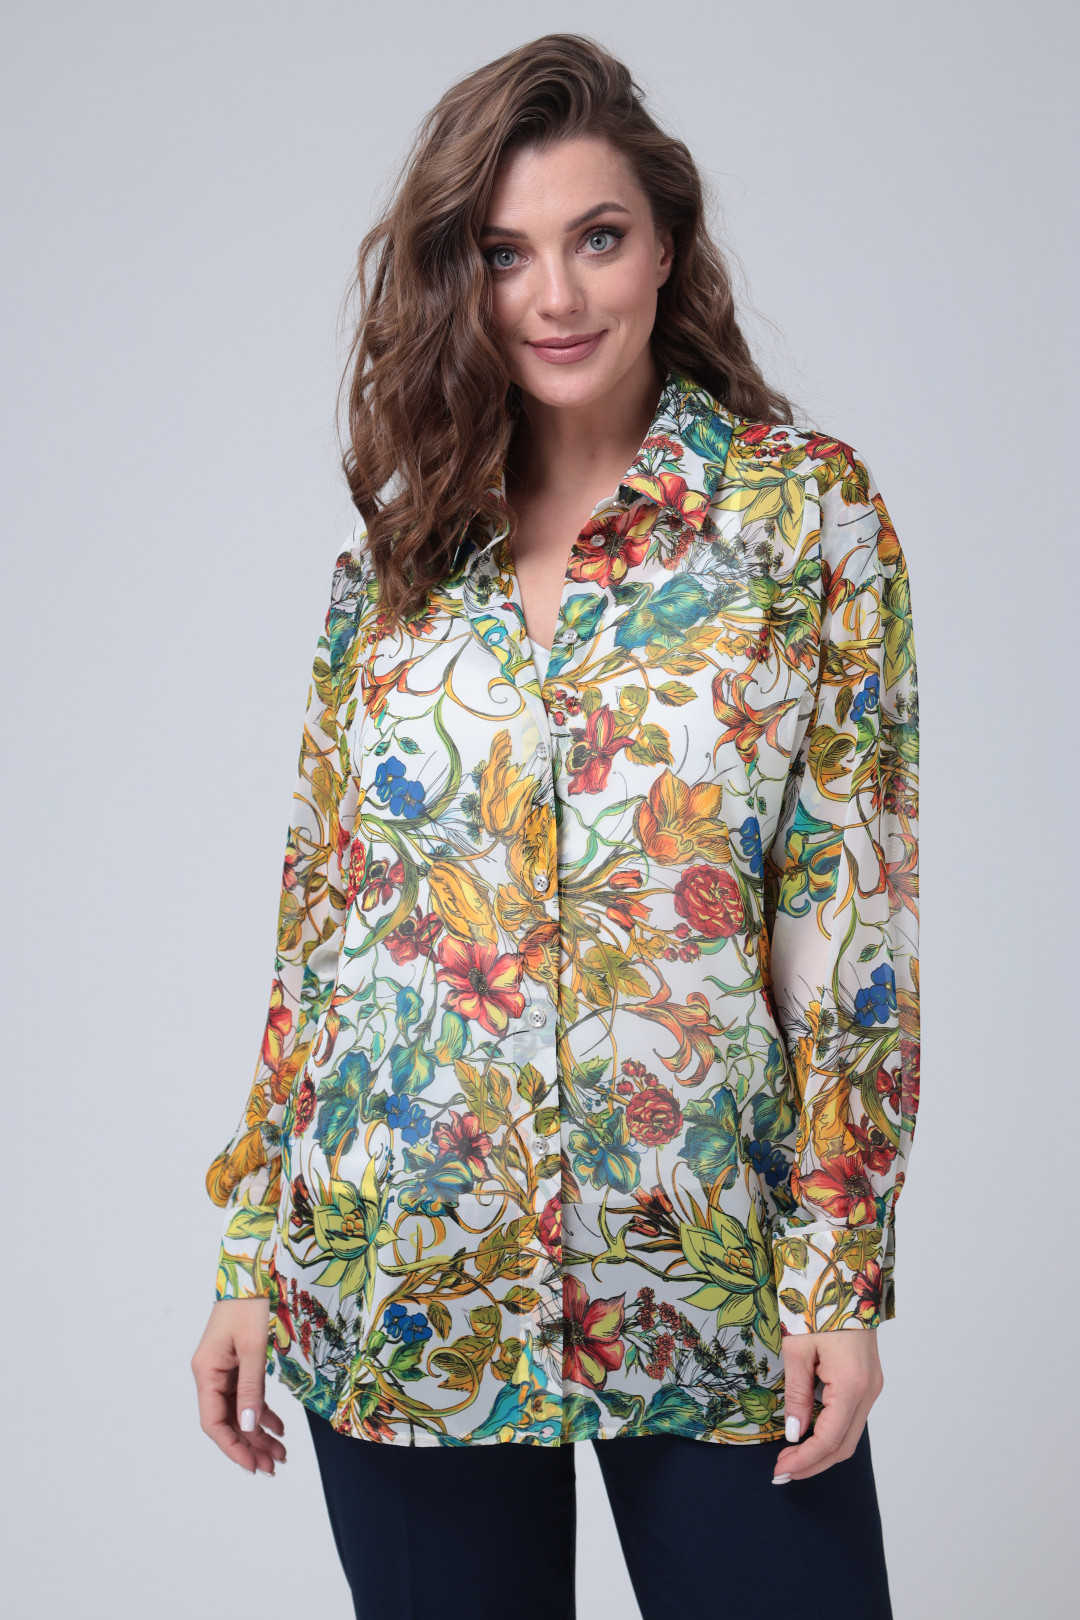 Блузка Talia Fashion 380 цветочный принт на белой основе